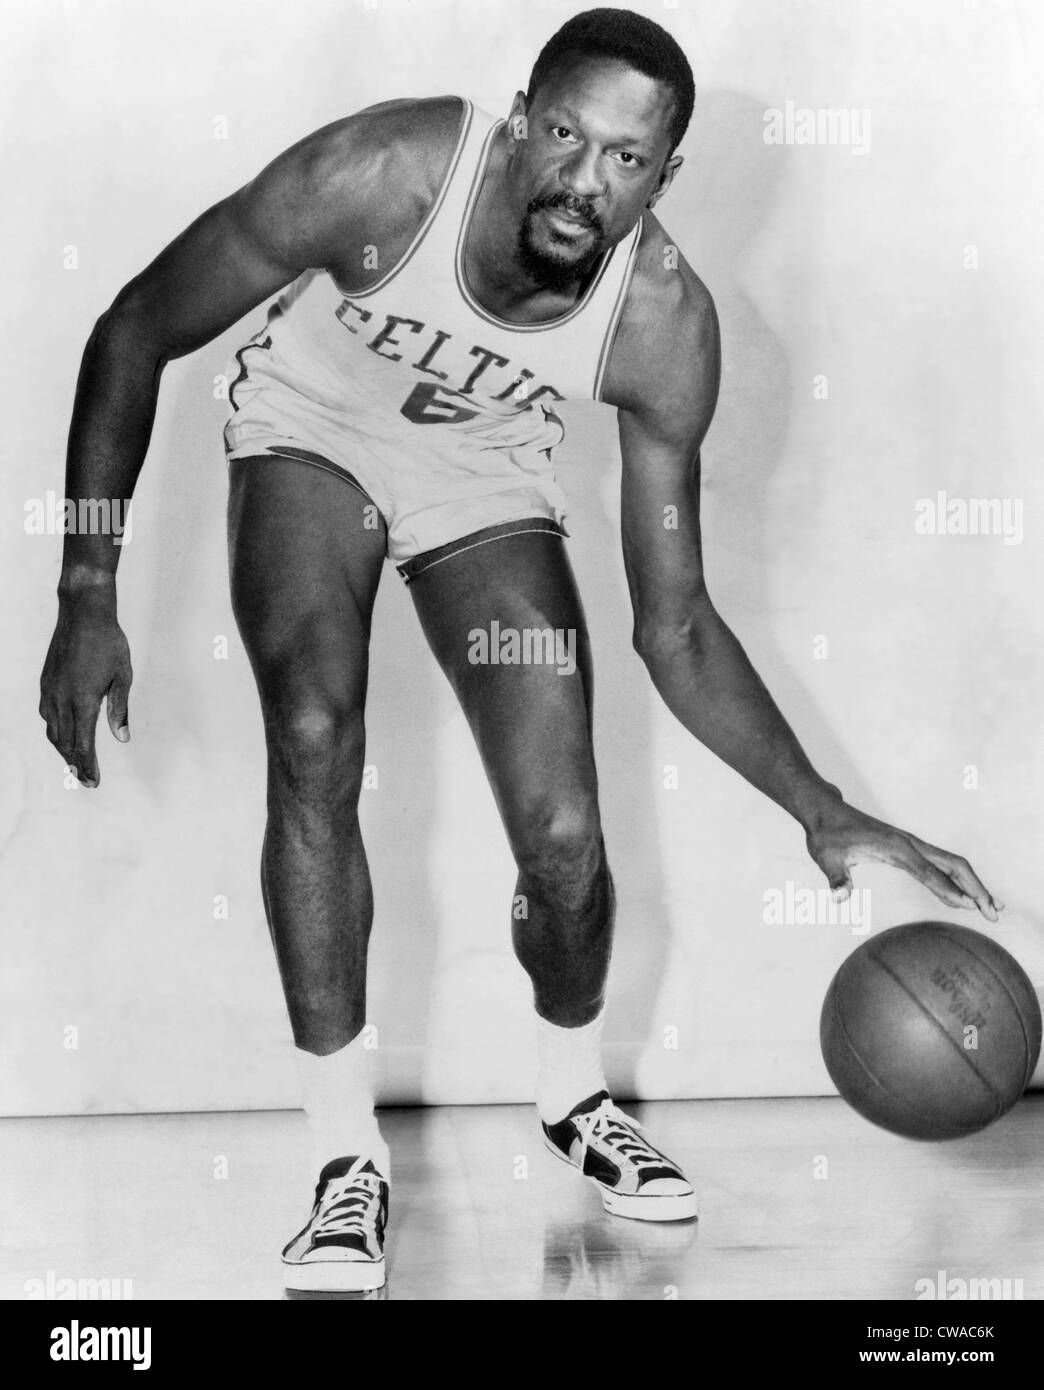 Bill Russell, joueur américain de basket-ball qui a joué pour les Boston  Celtics, vers 1960. Avec la permission de : Archives CSU/Everett Photo  Stock - Alamy